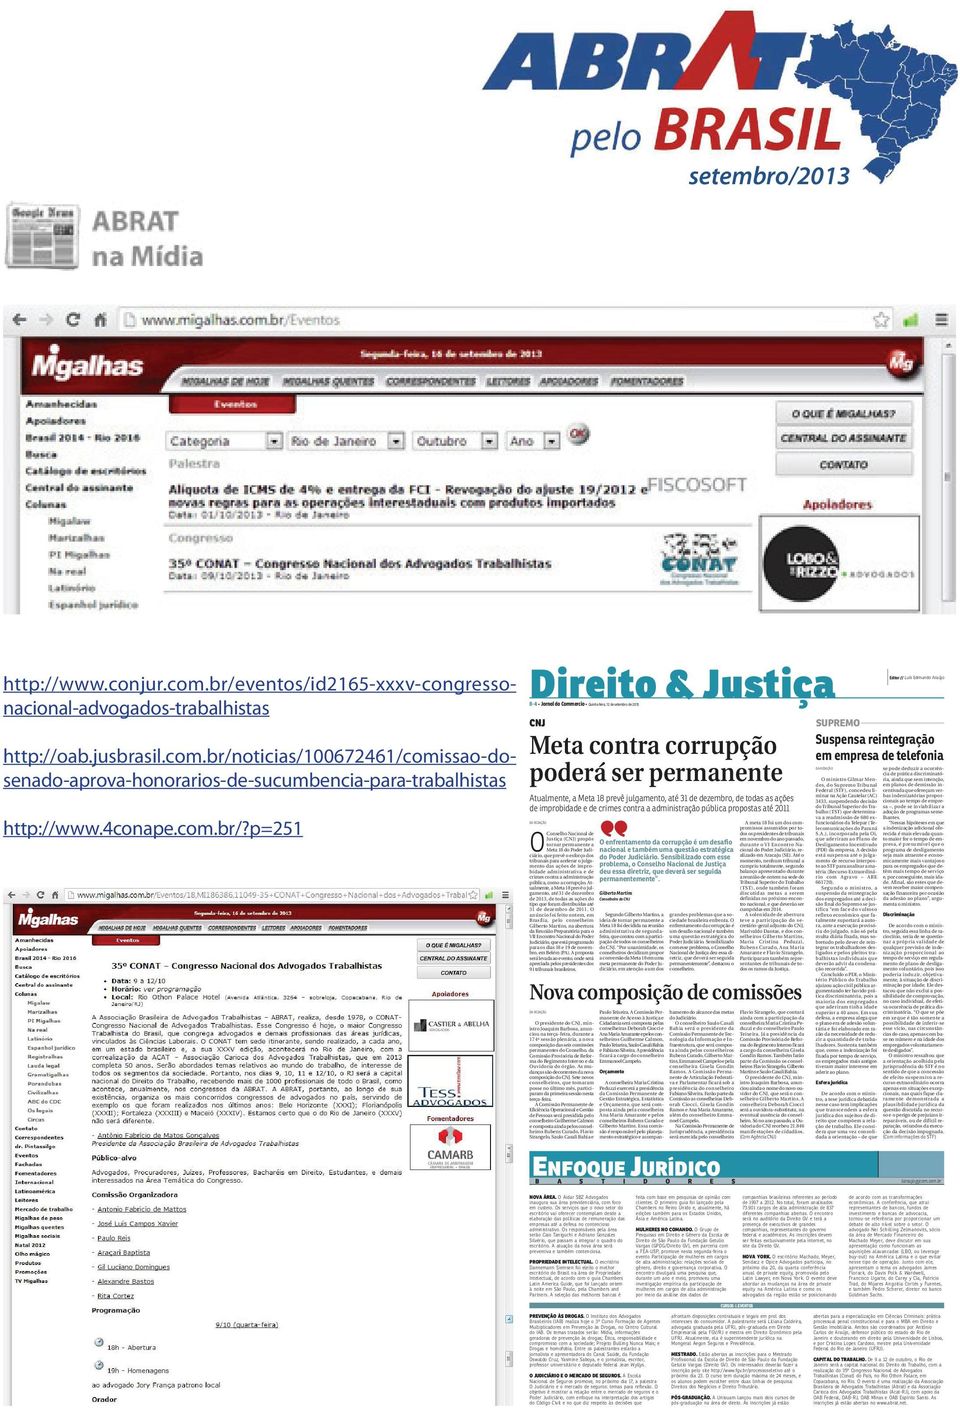 p=251 Direito & Justiça B-4 Jornal do Commercio Quinta-feira, 12 de setembro de 2013 CNJ Meta contra corrupção poderá ser permanente Atualmente, a Meta 18 prevê julgamento, até 31 de dezembro, de